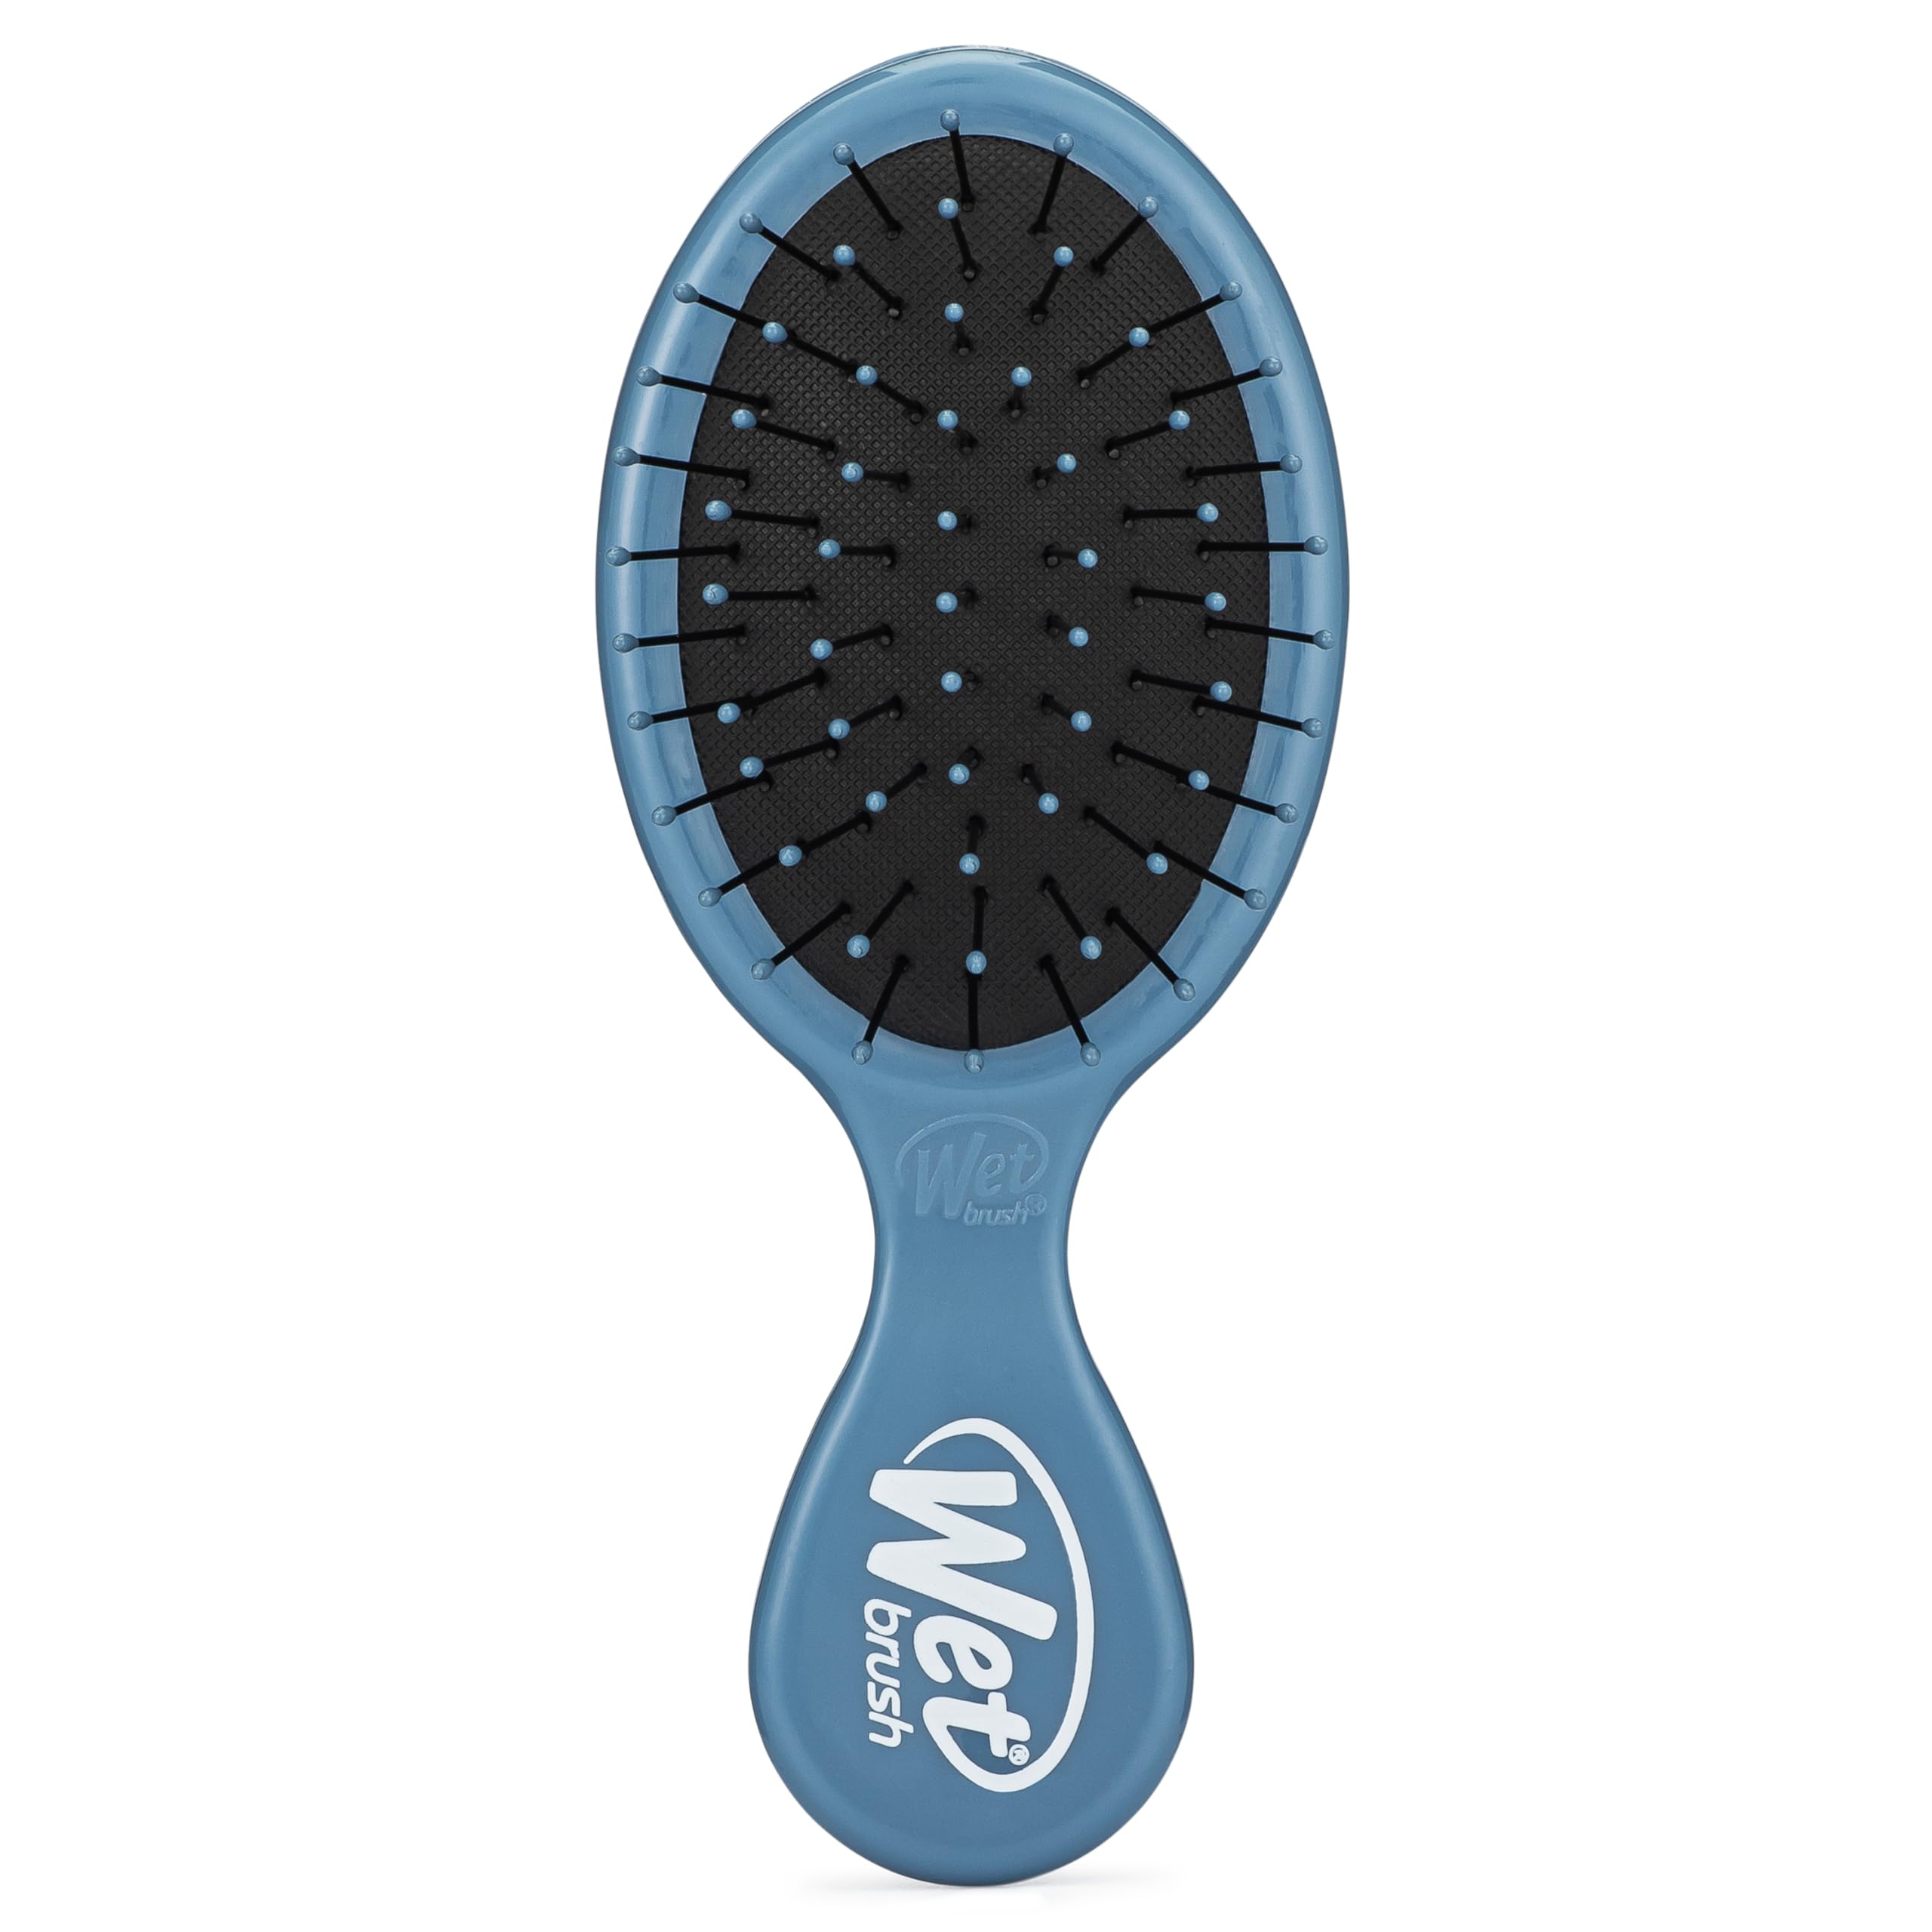 Wet Brush Mini Detangler Hair Brush, Elemental Blue - Detangling Travel Hair Brush - Ultra-Soft IntelliFlex Bristles Glide Through Tangles with Ease - Pain-Free - All Hair Types